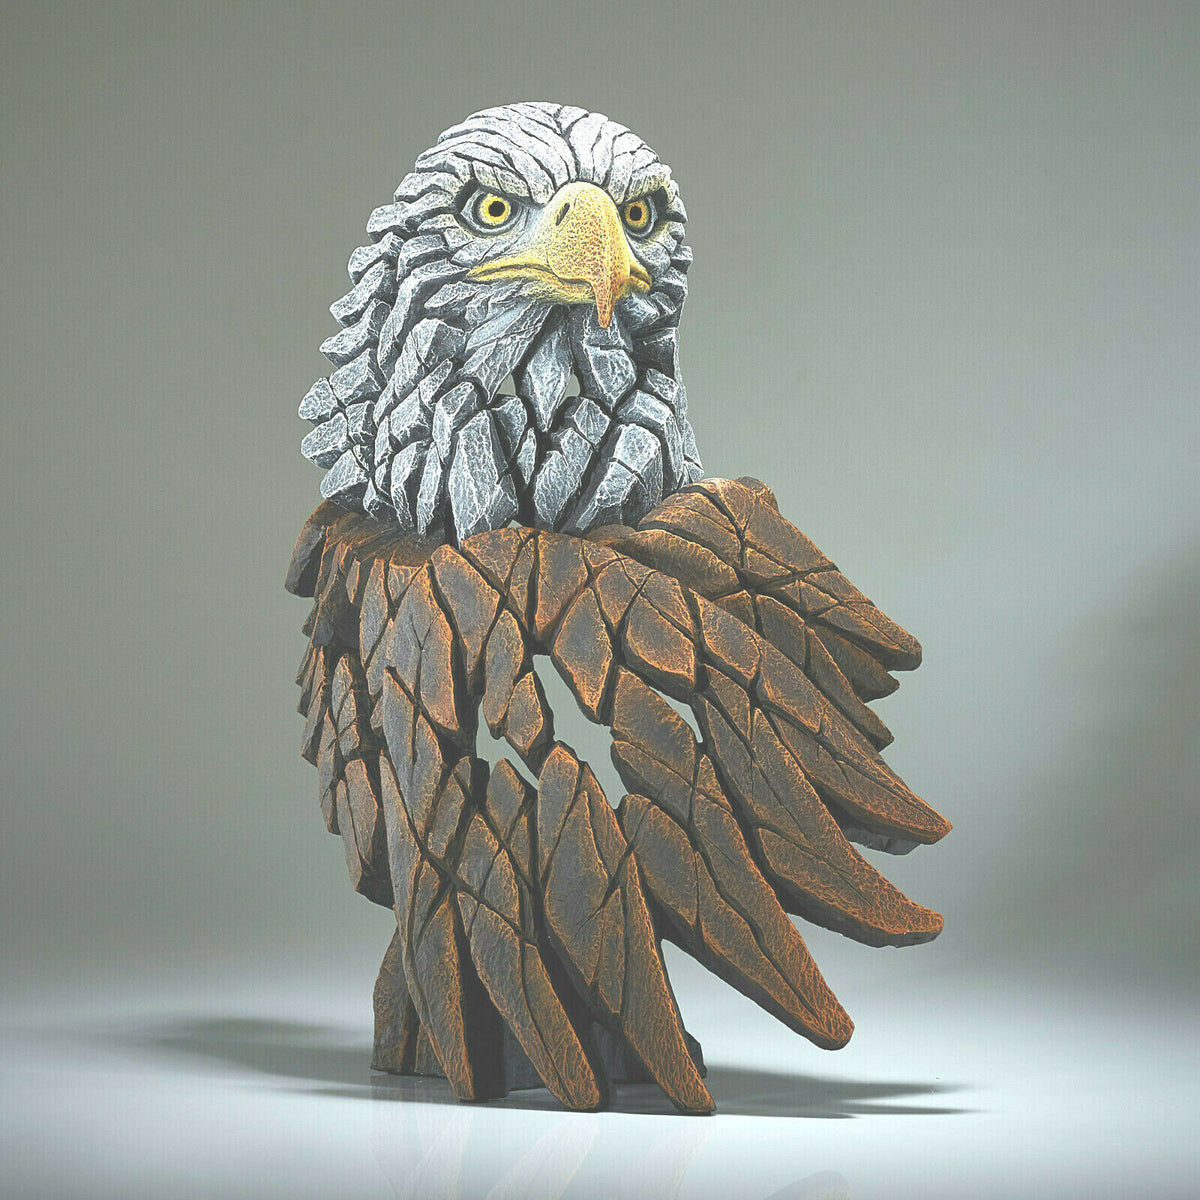 Edges Bald Eagle Sculpture